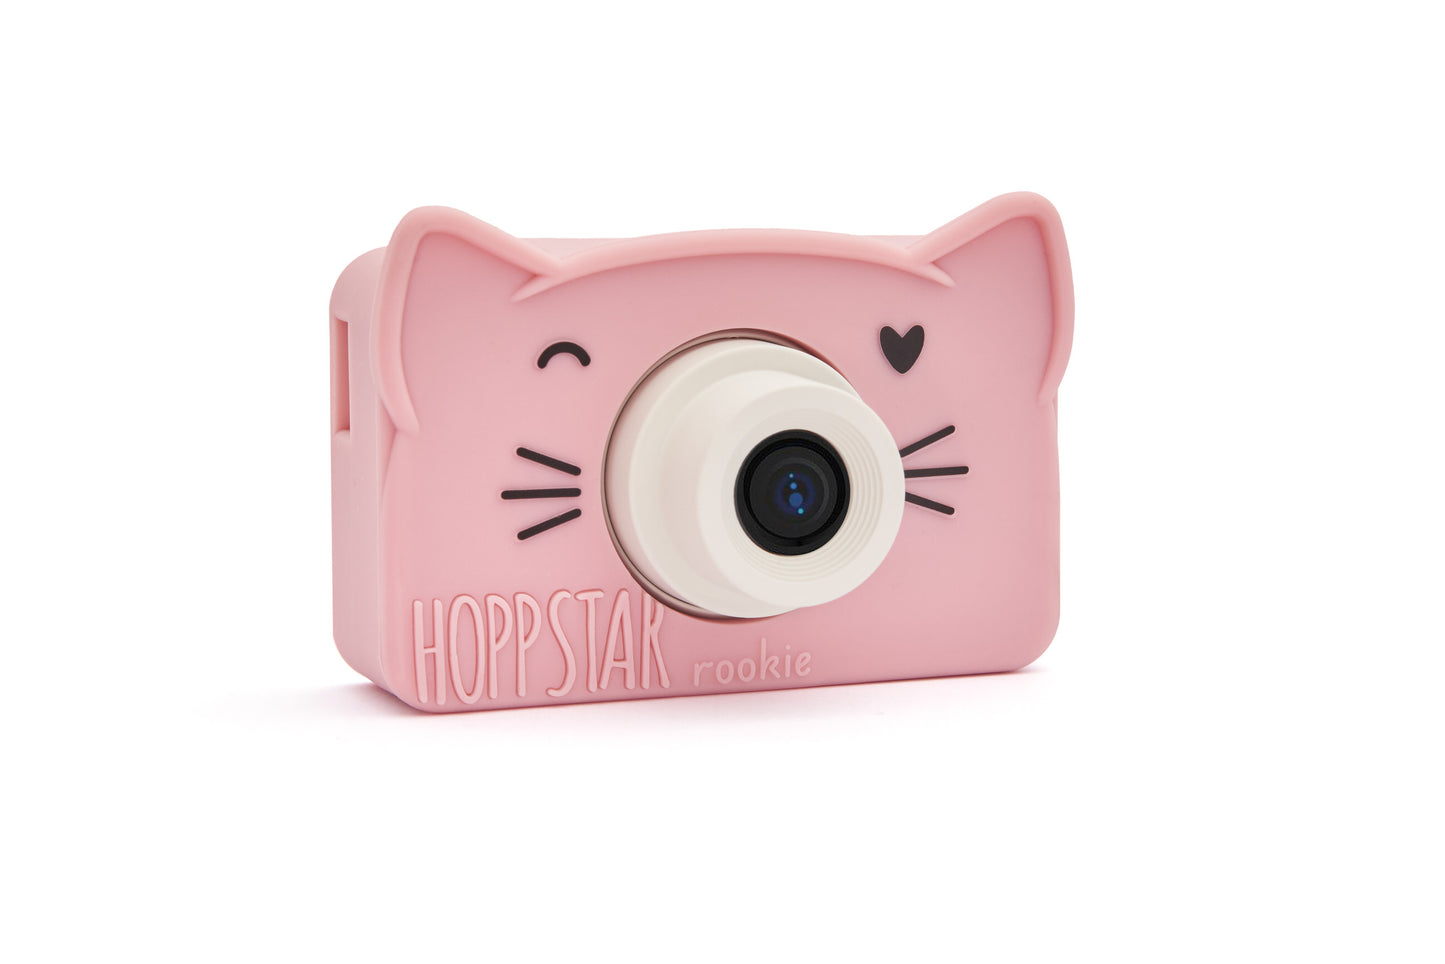 Fotocamera Hoppstar Rookie rosa